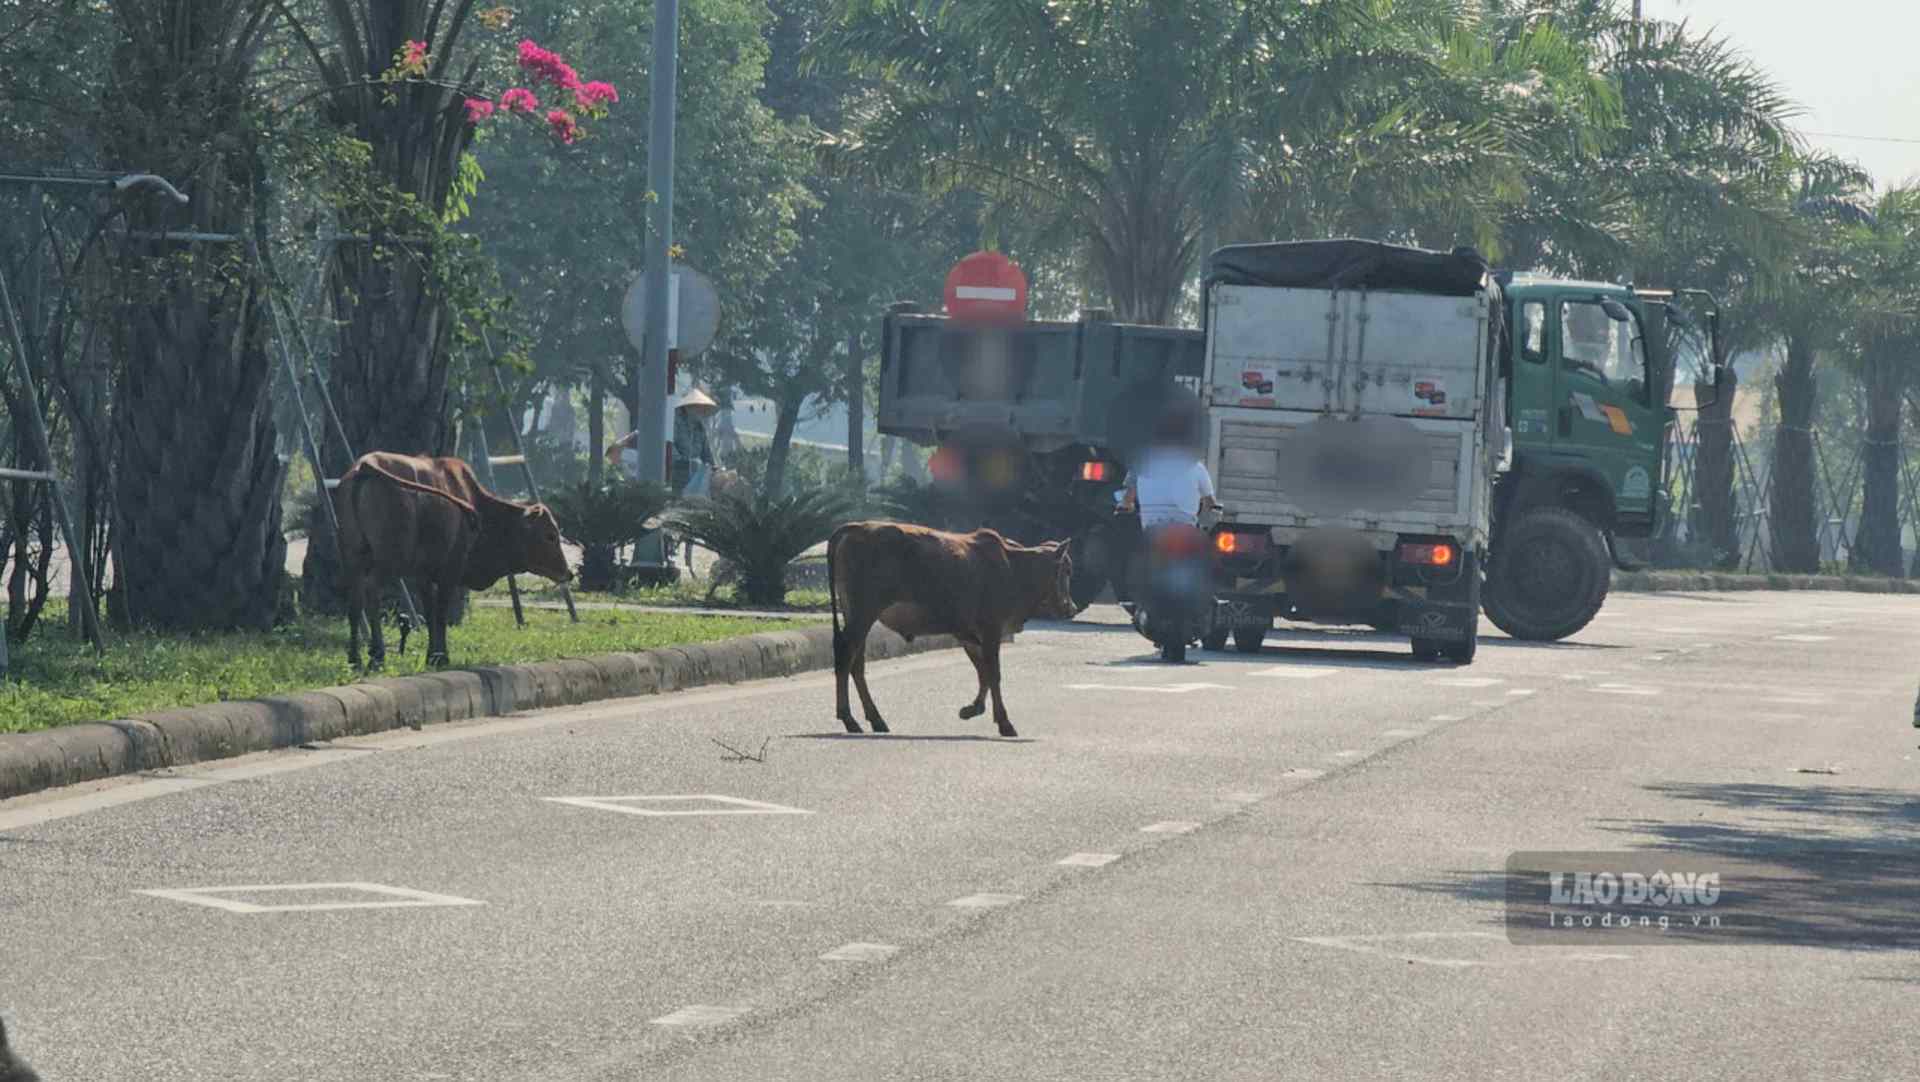 Vào thời điểm sáng sớm, khi nhiều người vội vàng đi học, đi làm, đó cũng là lúc những con bò này xuất hiện, gây cản trở việc lưu thông, gây mất an toàn cho người tham gia giao thông.